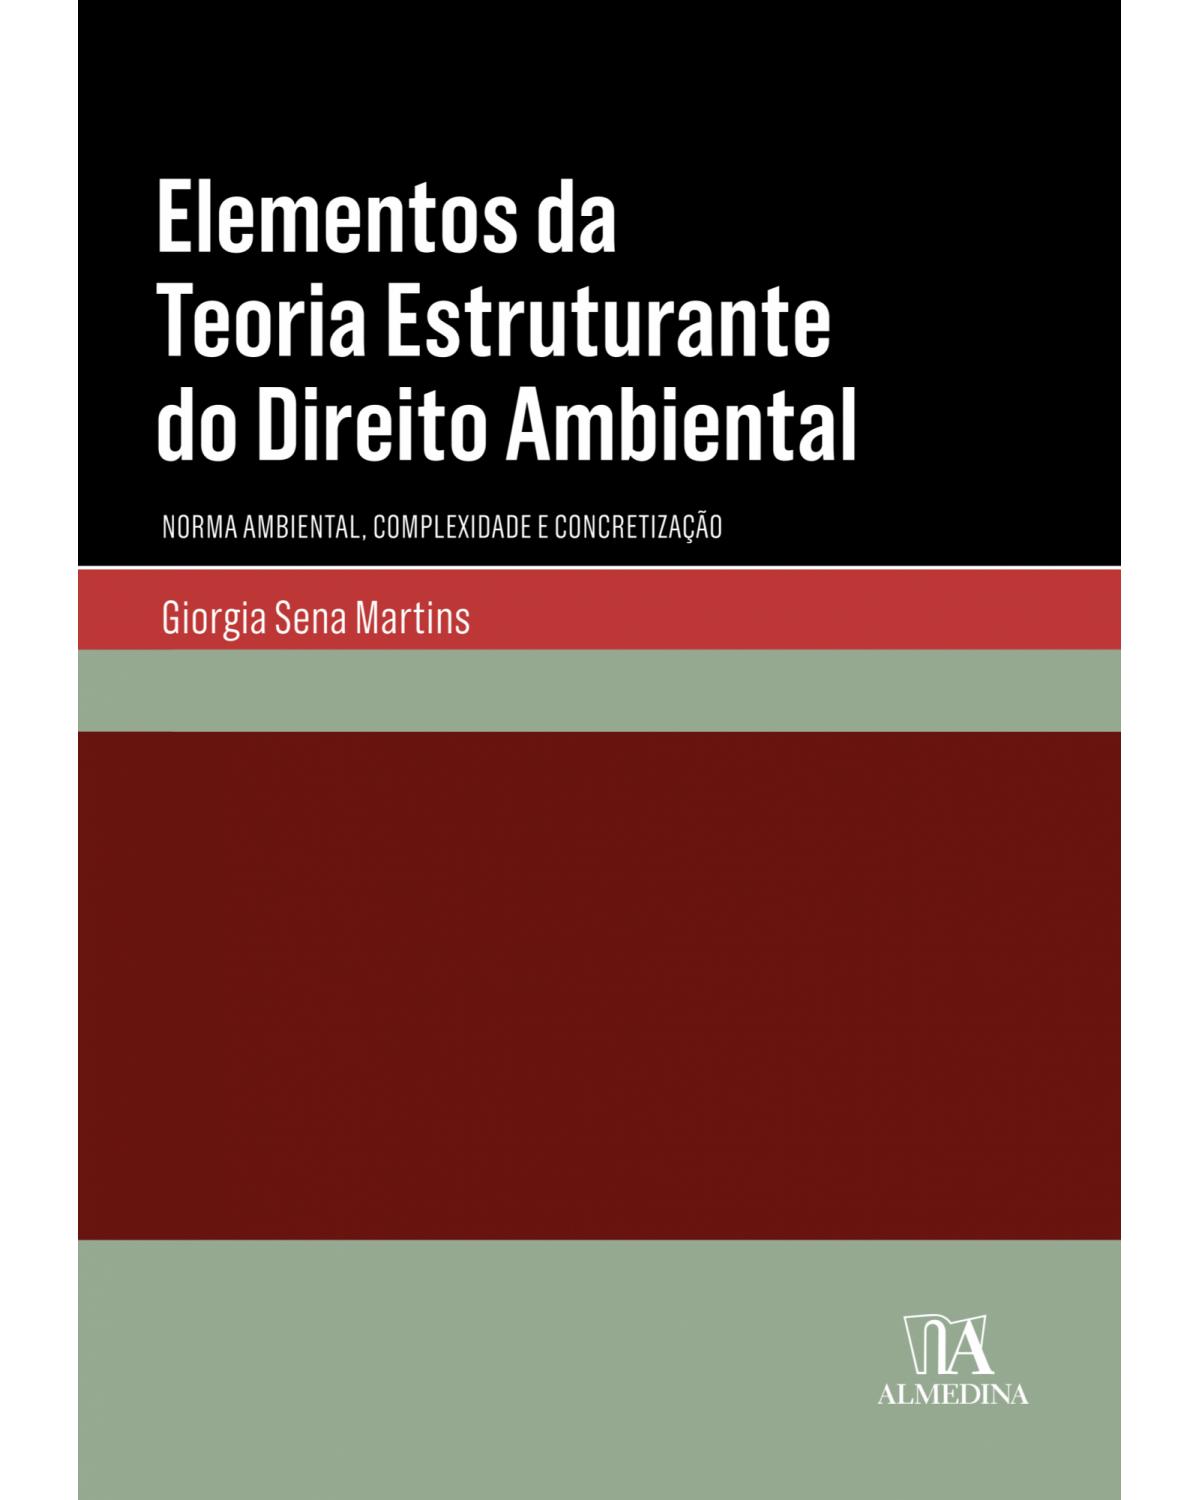 Elementos da teoria estruturante do direito ambiental: norma ambiental, complexidade e concretização - 1ª Edição | 2018